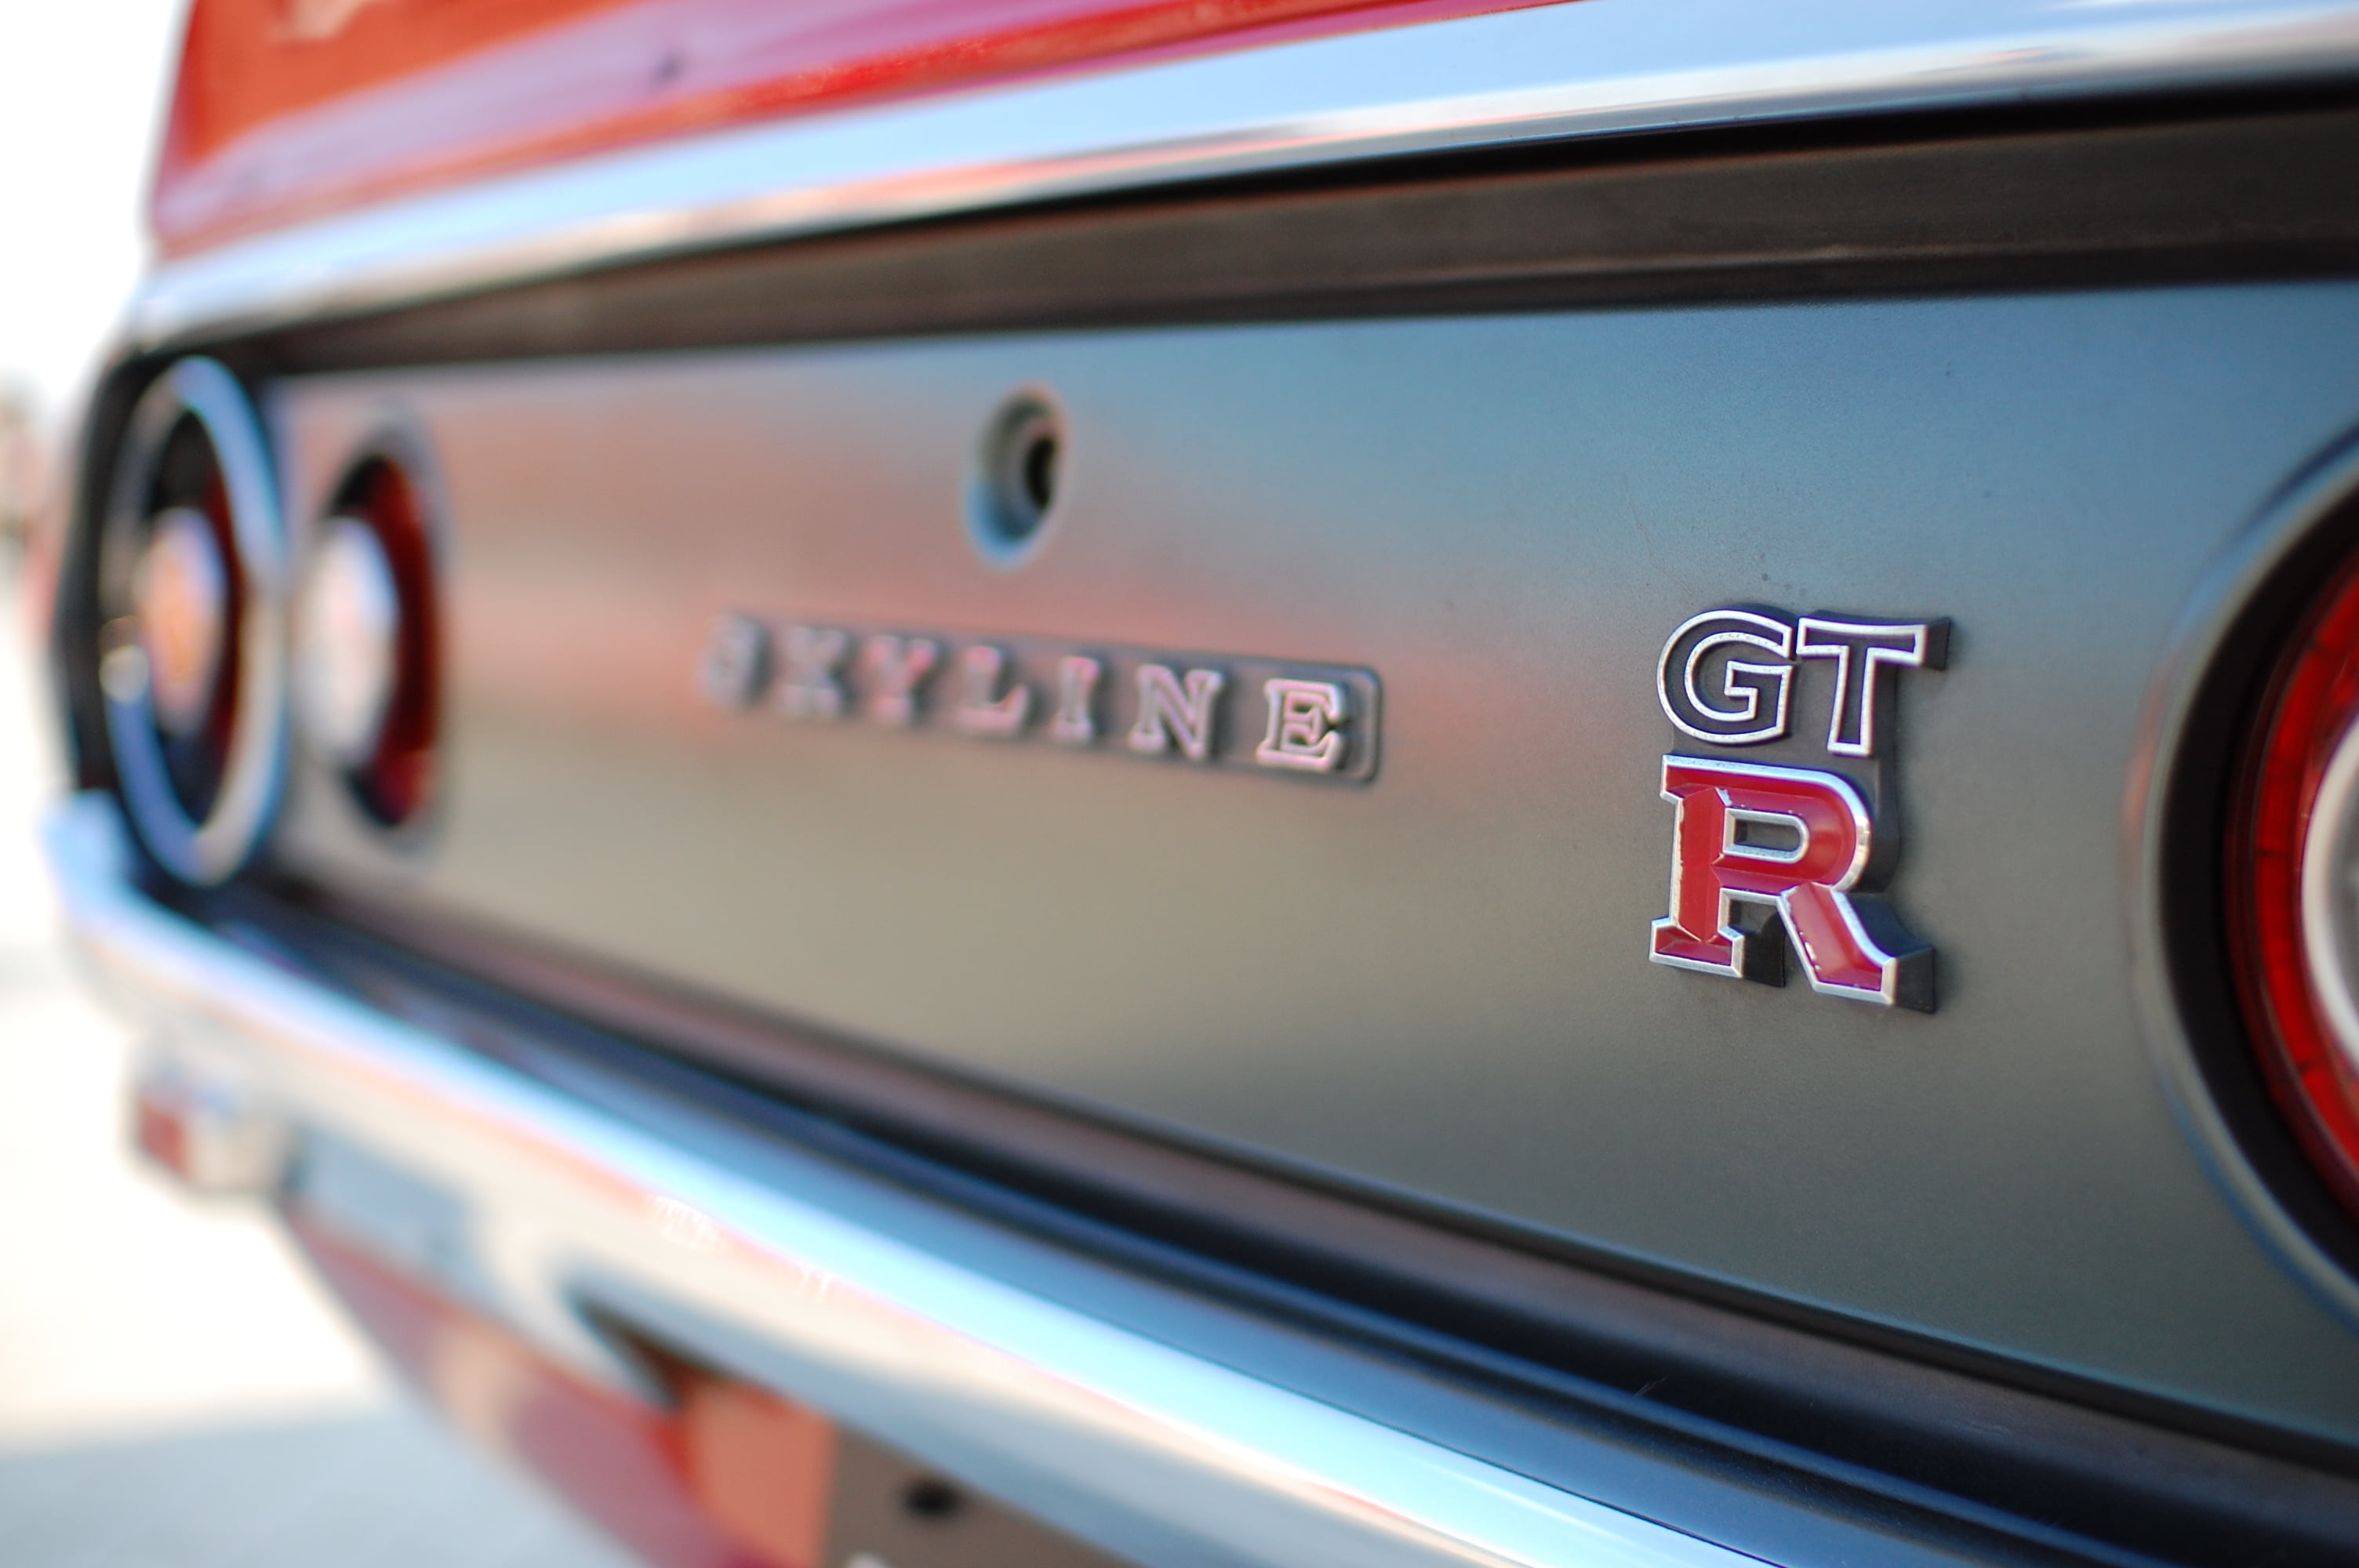 GTR Skyline, Red car wallpaper, Nissan power, Stunning vehicle, 3010x2000 HD Desktop